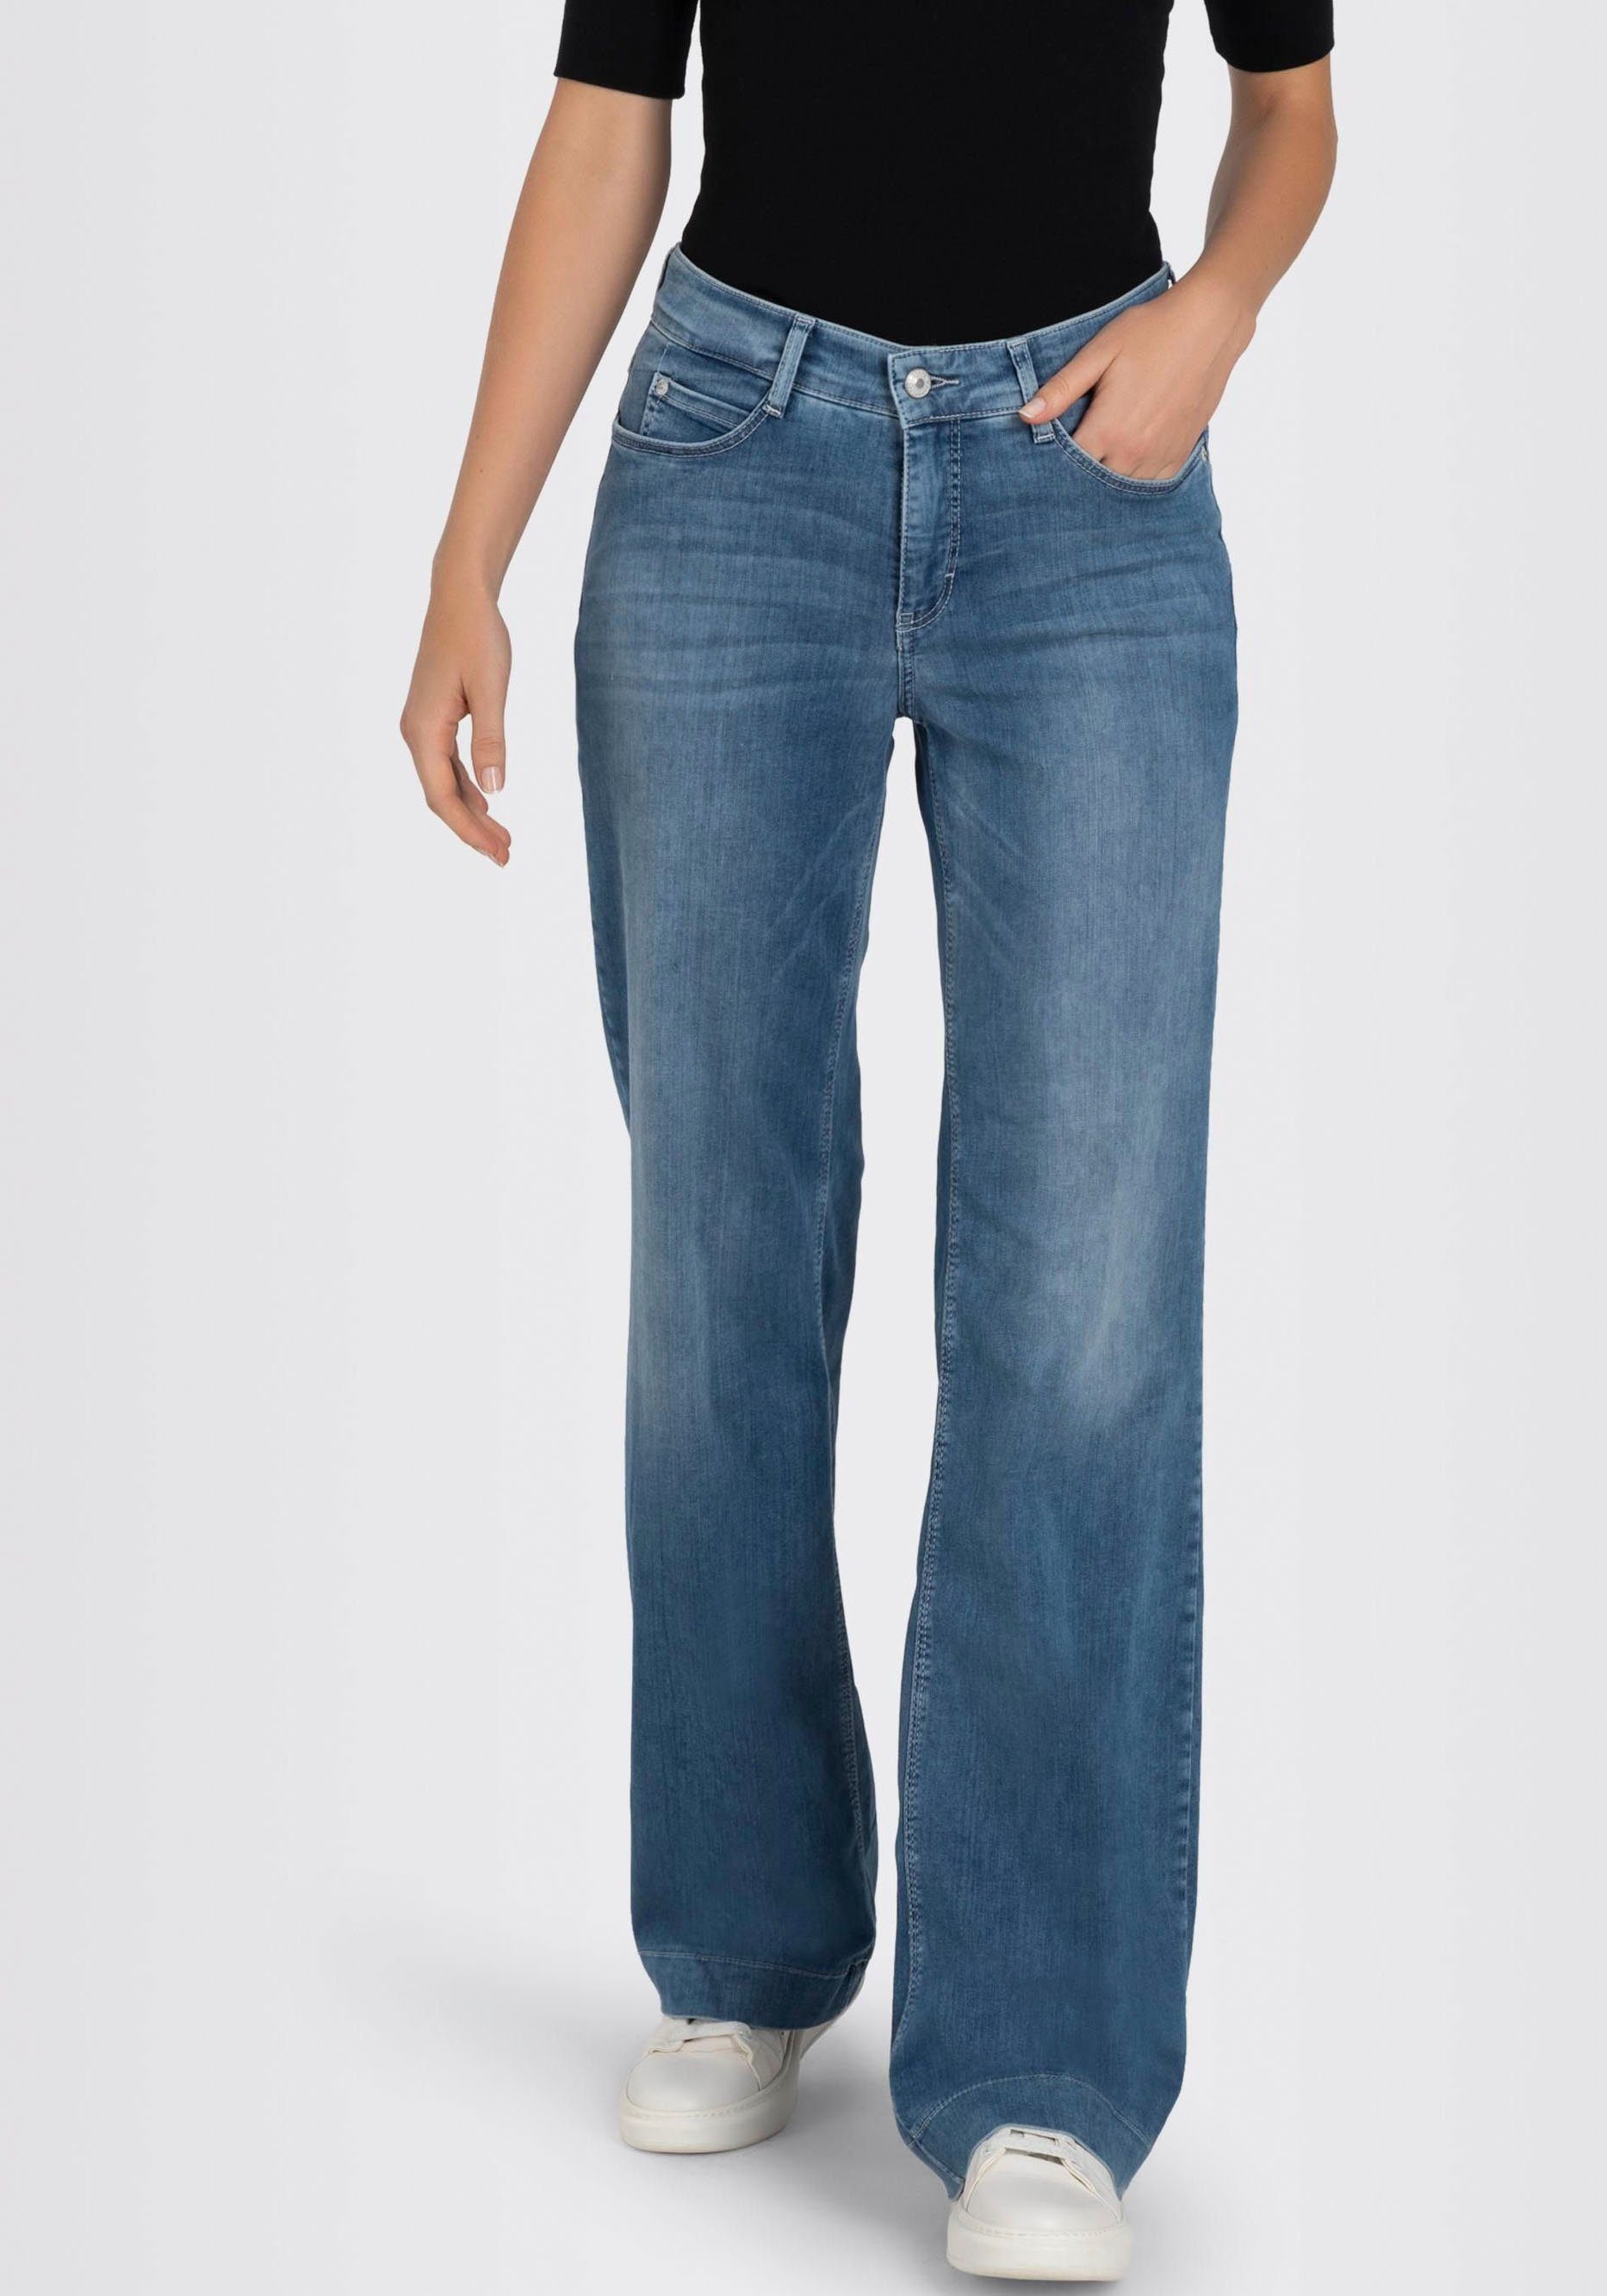 Verkaufsladen MAC Weite Jeans DREAM WIDE blue - mit Bein summermid Stretch weitem